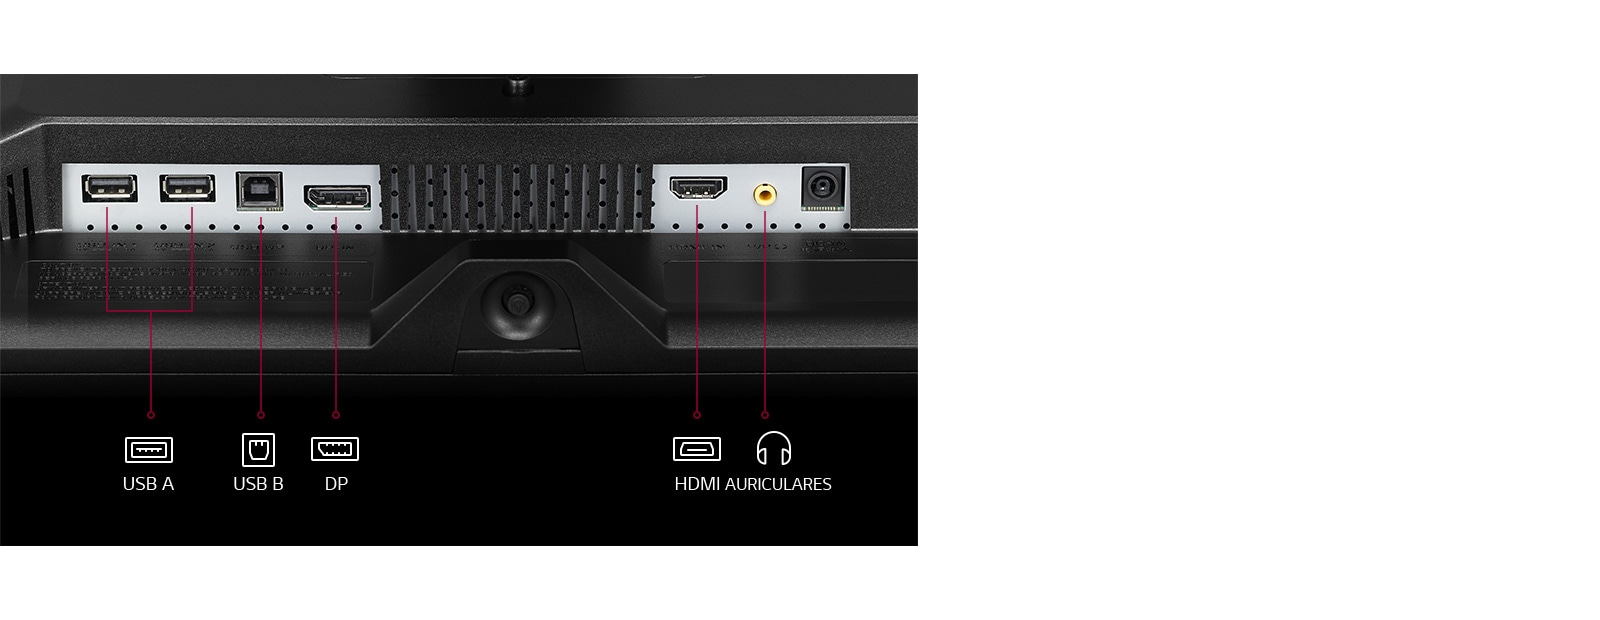 LG Monitor Corporativo (Panel IPS: 1920 x 1080px, ratio 16:9, 250 cd/m²,  1000:1, 75Hz, 5ms) ; entr: HDMI x1, DP x1, USB x3 ; Regulable en altura e  inclinación, pivotable y giratorio, F